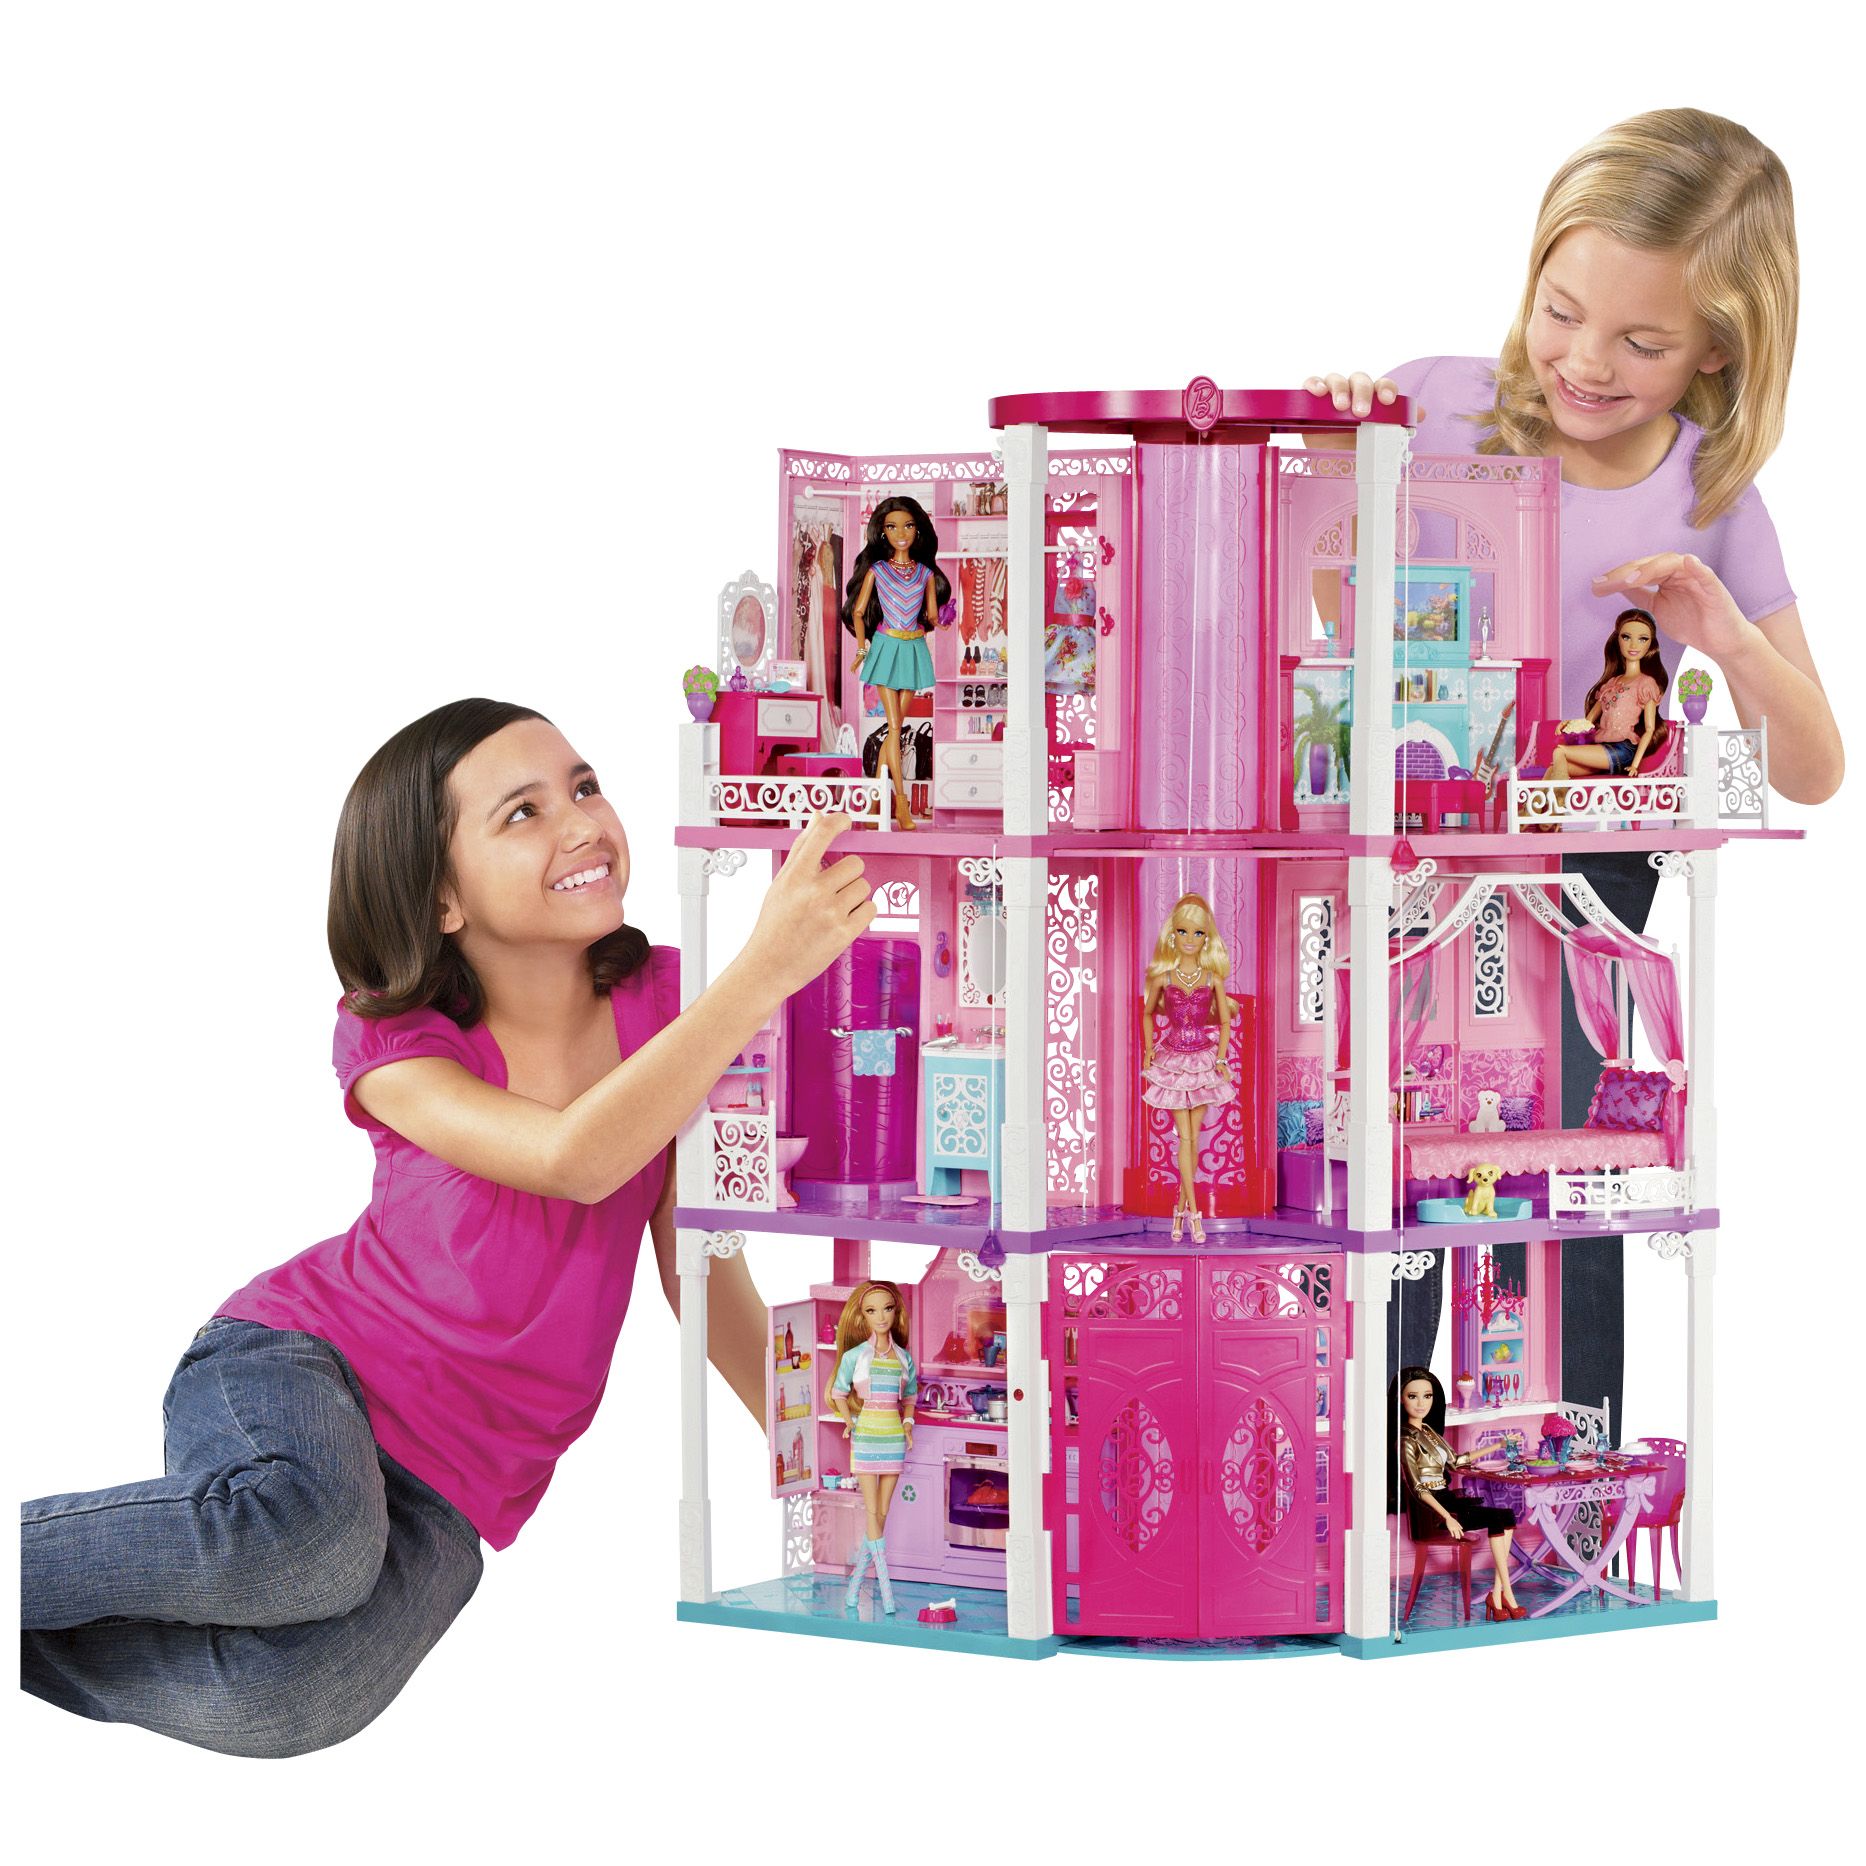 Что можно купить на 9 лет. Барби из Дрим Хаус. Домик для кукол Барби Дрим Хаус. Mattel Barbie дом мечты. Игрушки для девочек 8 лет.